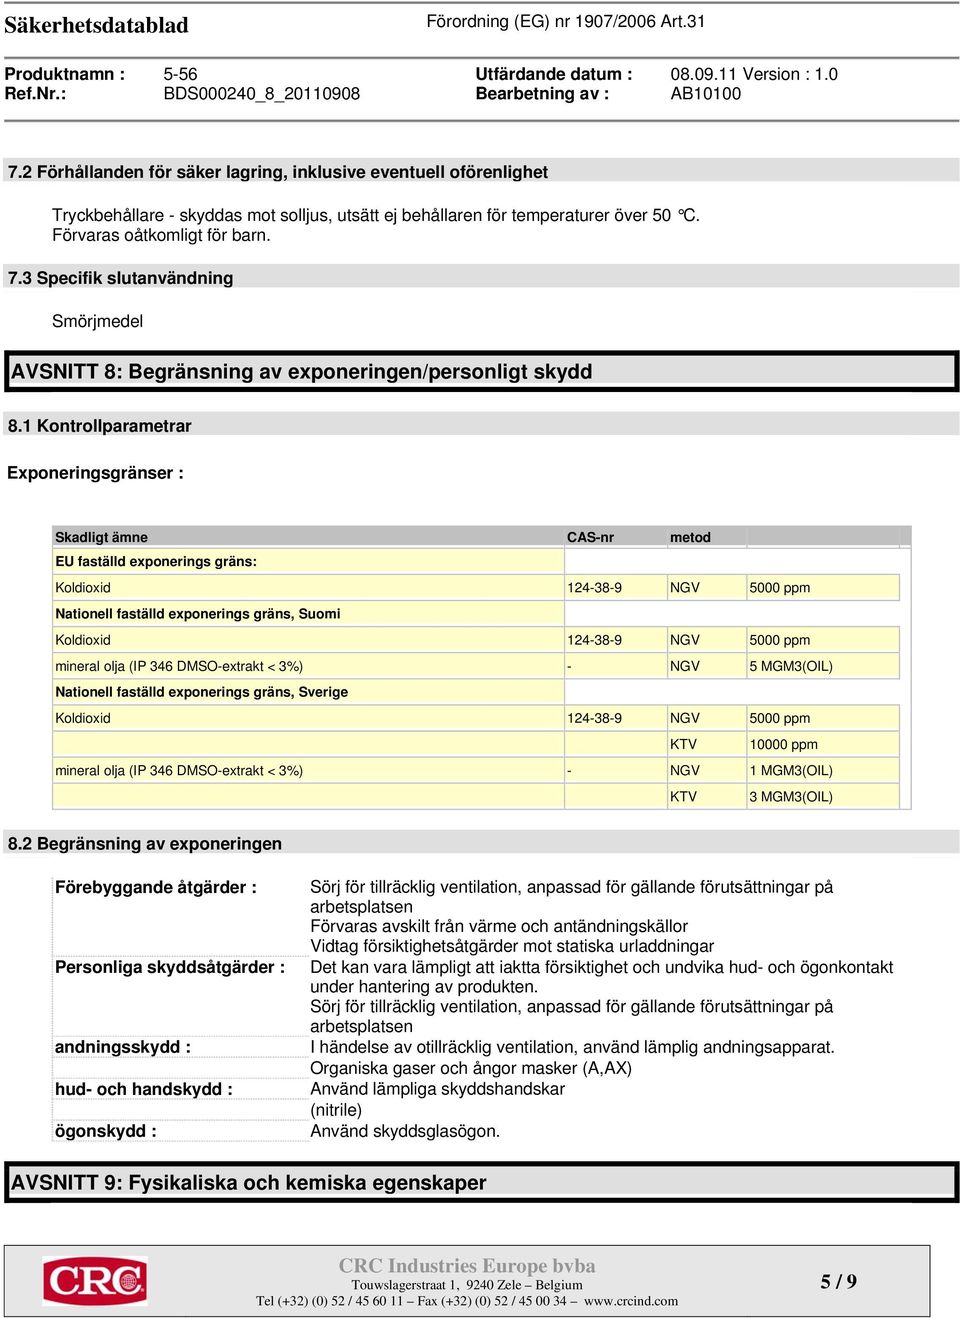 1 Kontrollparametrar Exponeringsgränser : Skadligt ämne CAS-nr metod EU faställd exponerings gräns: Koldioxid 124-38-9 NGV 5000 ppm Nationell faställd exponerings gräns, Suomi Koldioxid 124-38-9 NGV